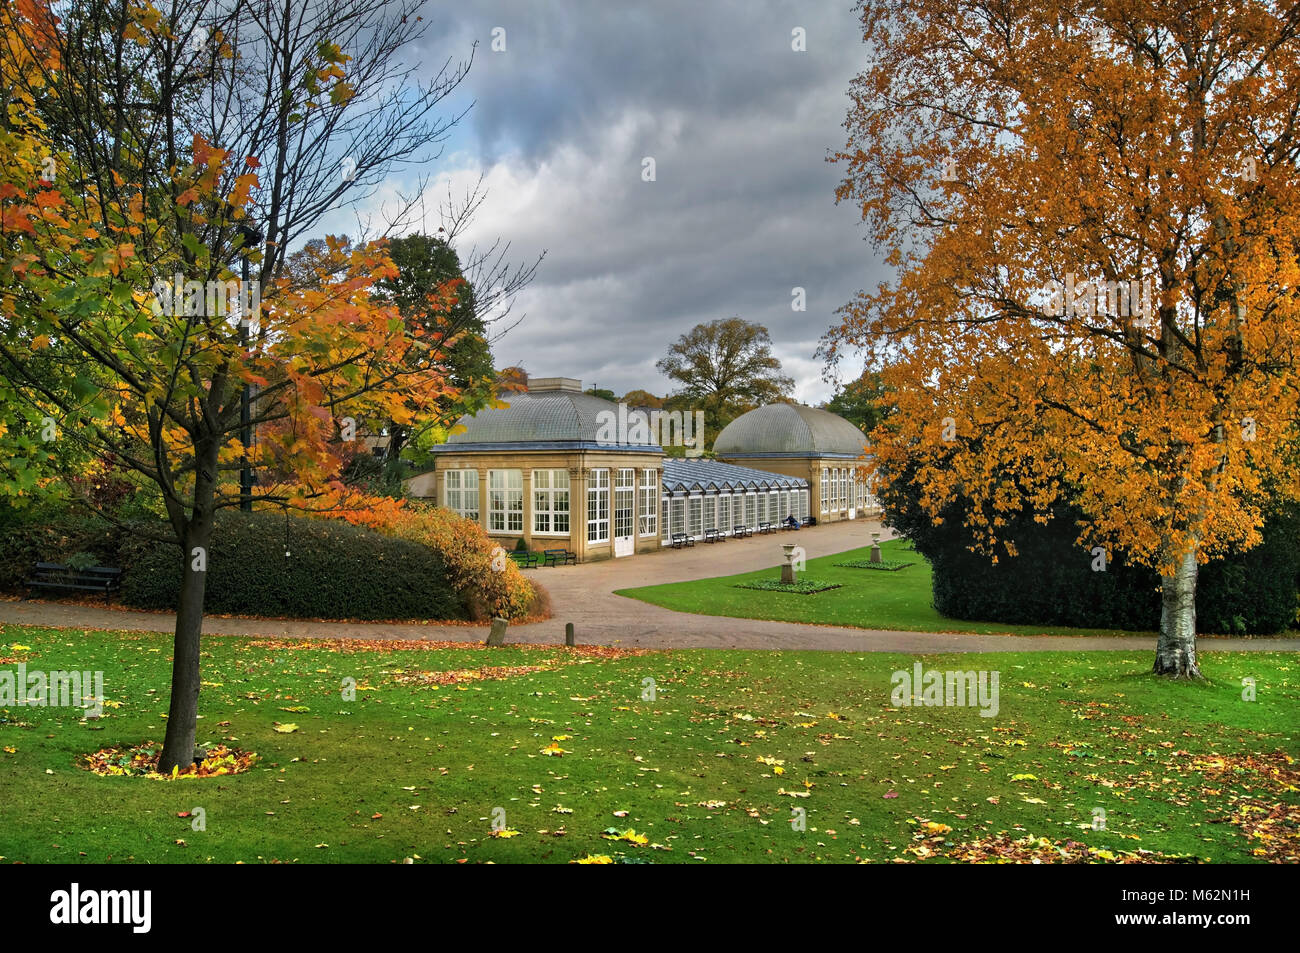 UK,South Yorkshire,Sheffield,Botanical Gardens et la maison de verre, au cours de l'automne Banque D'Images